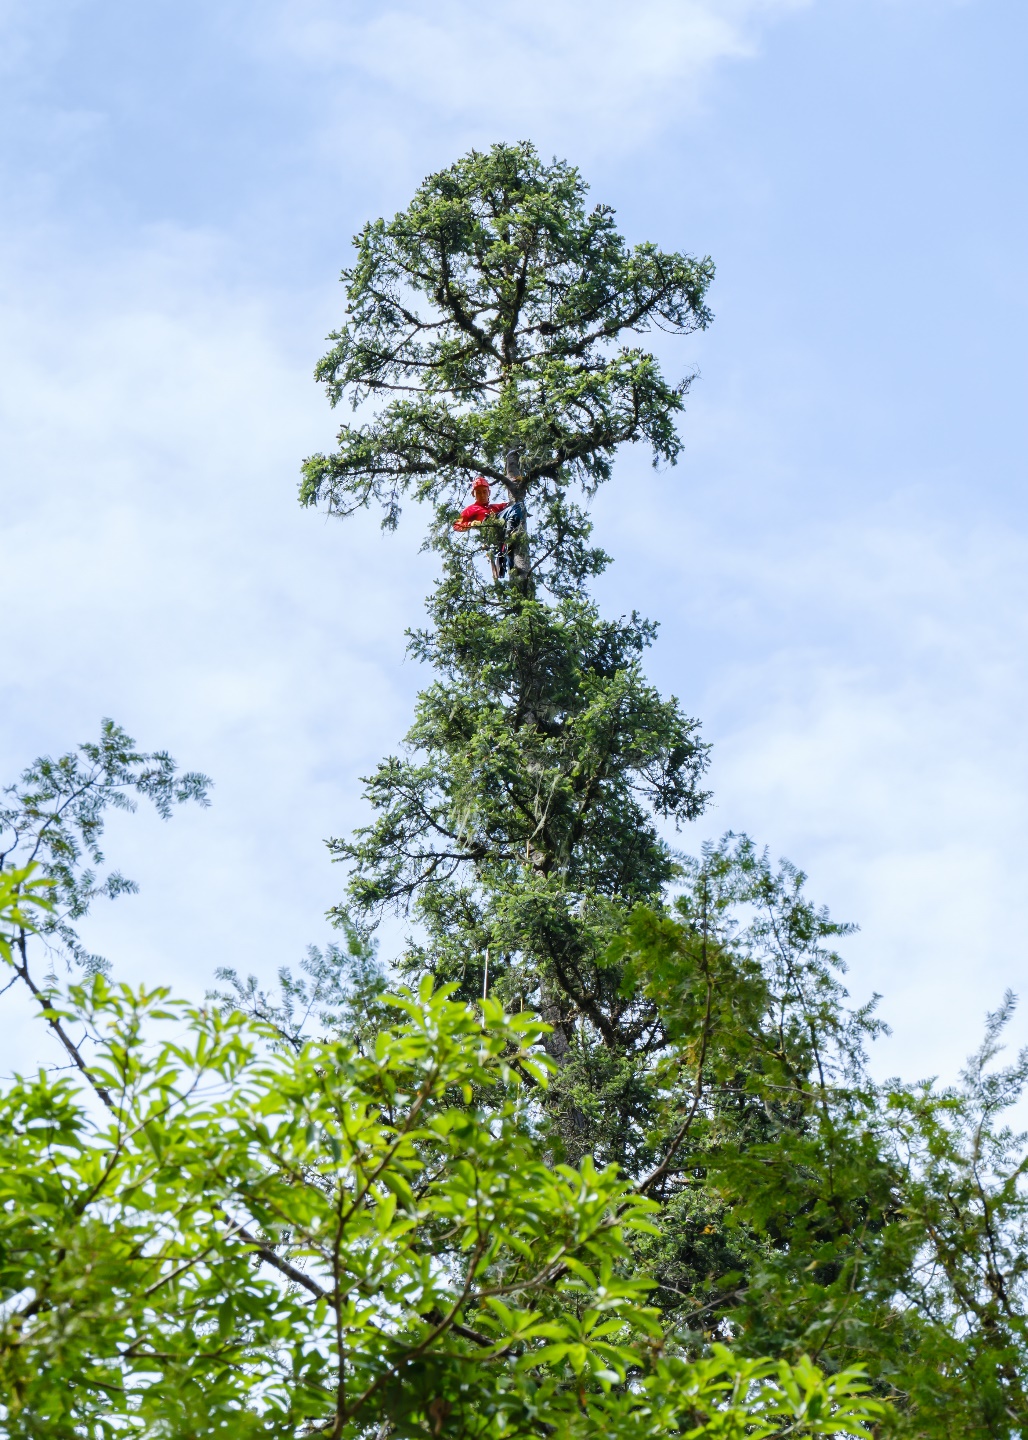 834米!中国第一高树云南黄果冷杉完成测量,巨树等身照发布